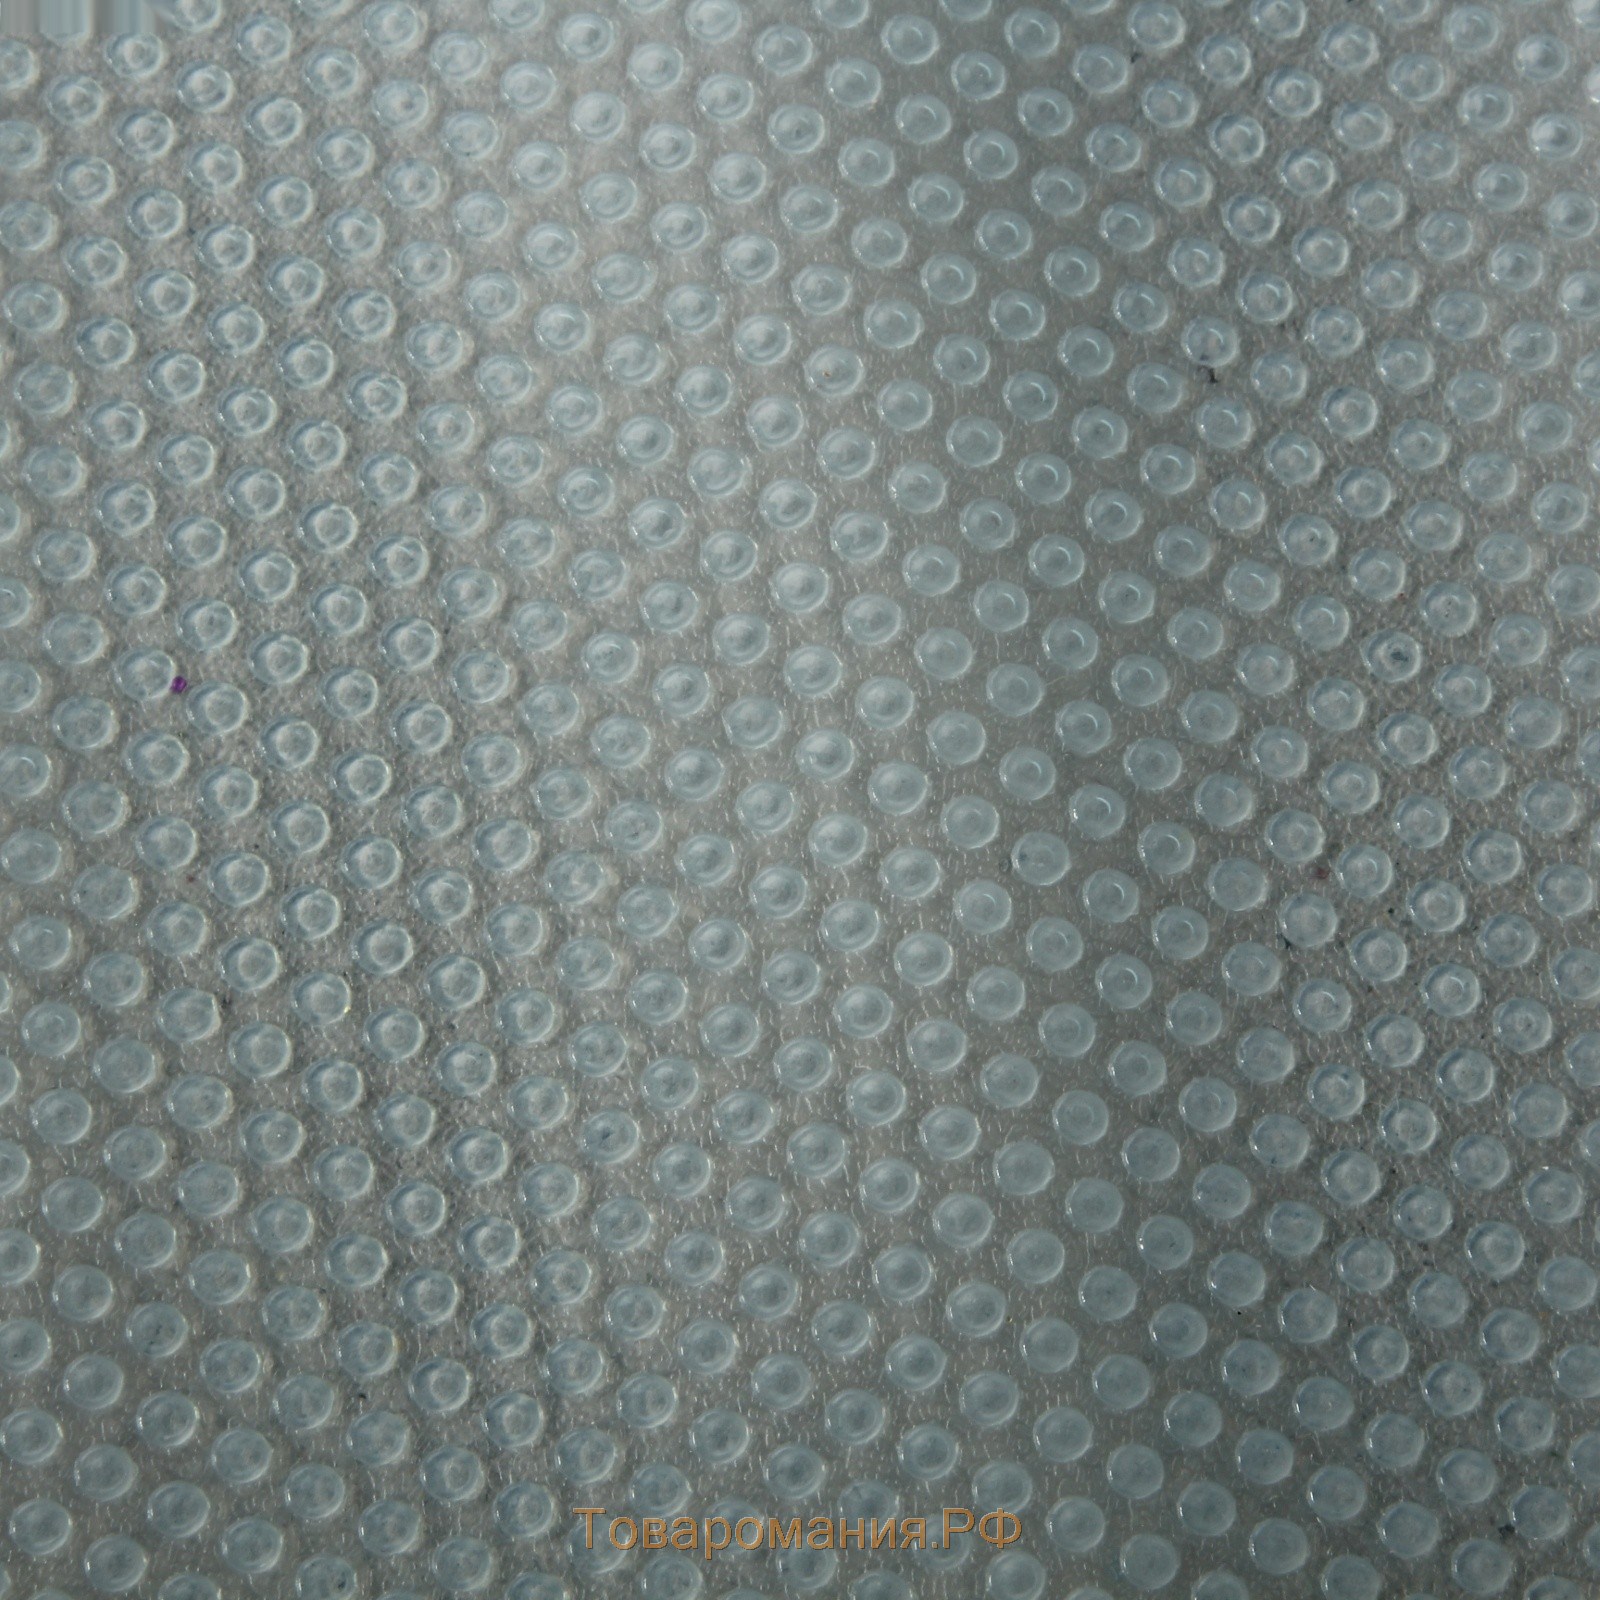 Коврик противоскользящий «Круги», 30×150 см, цвет прозрачный голубой